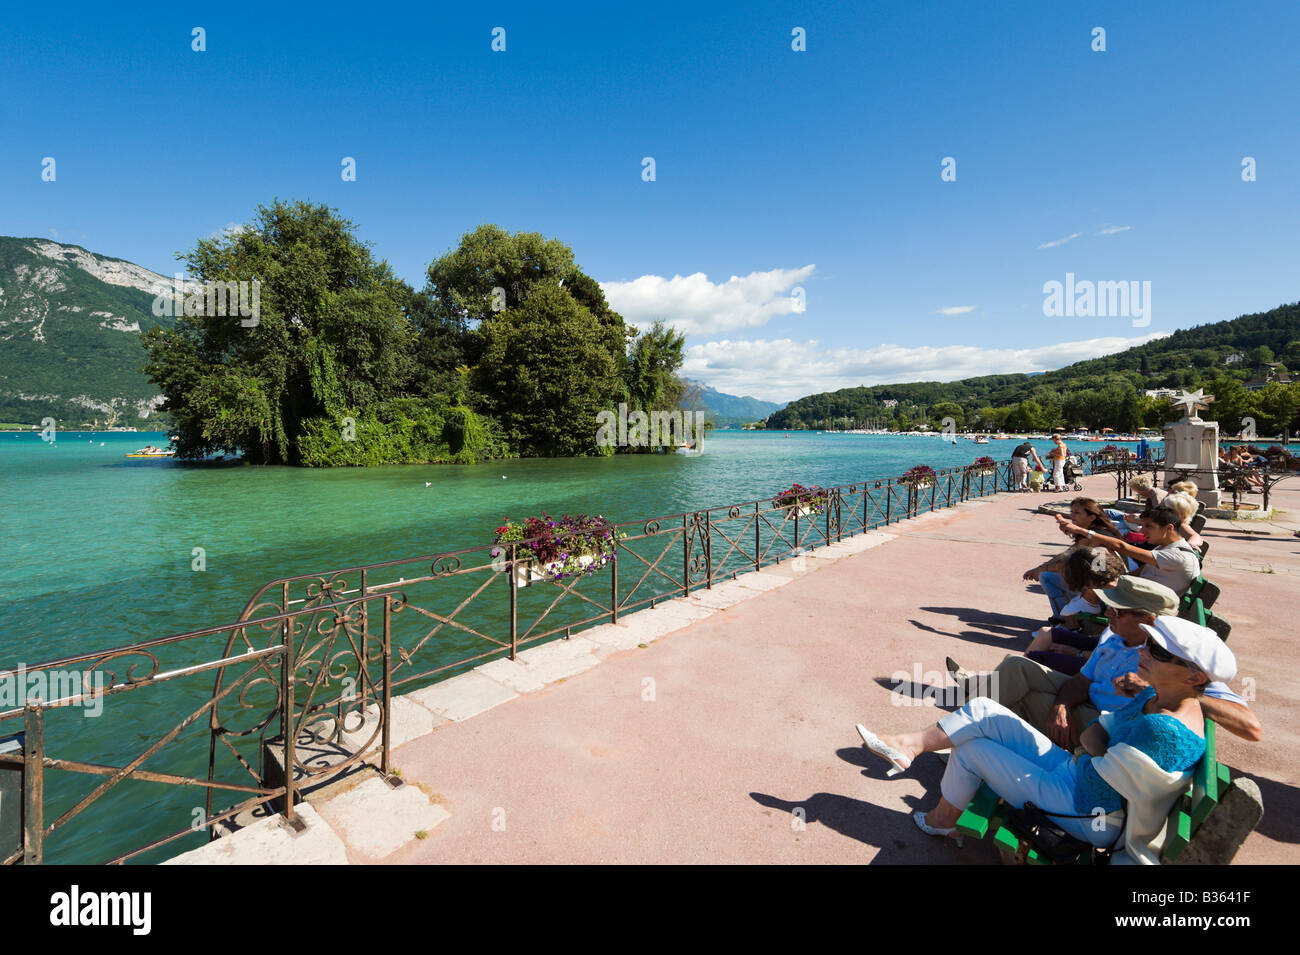 Turisti che si siedono sui banchi sulle rive del lago di Annecy, Annecy, sulle Alpi francesi, Francia Foto Stock